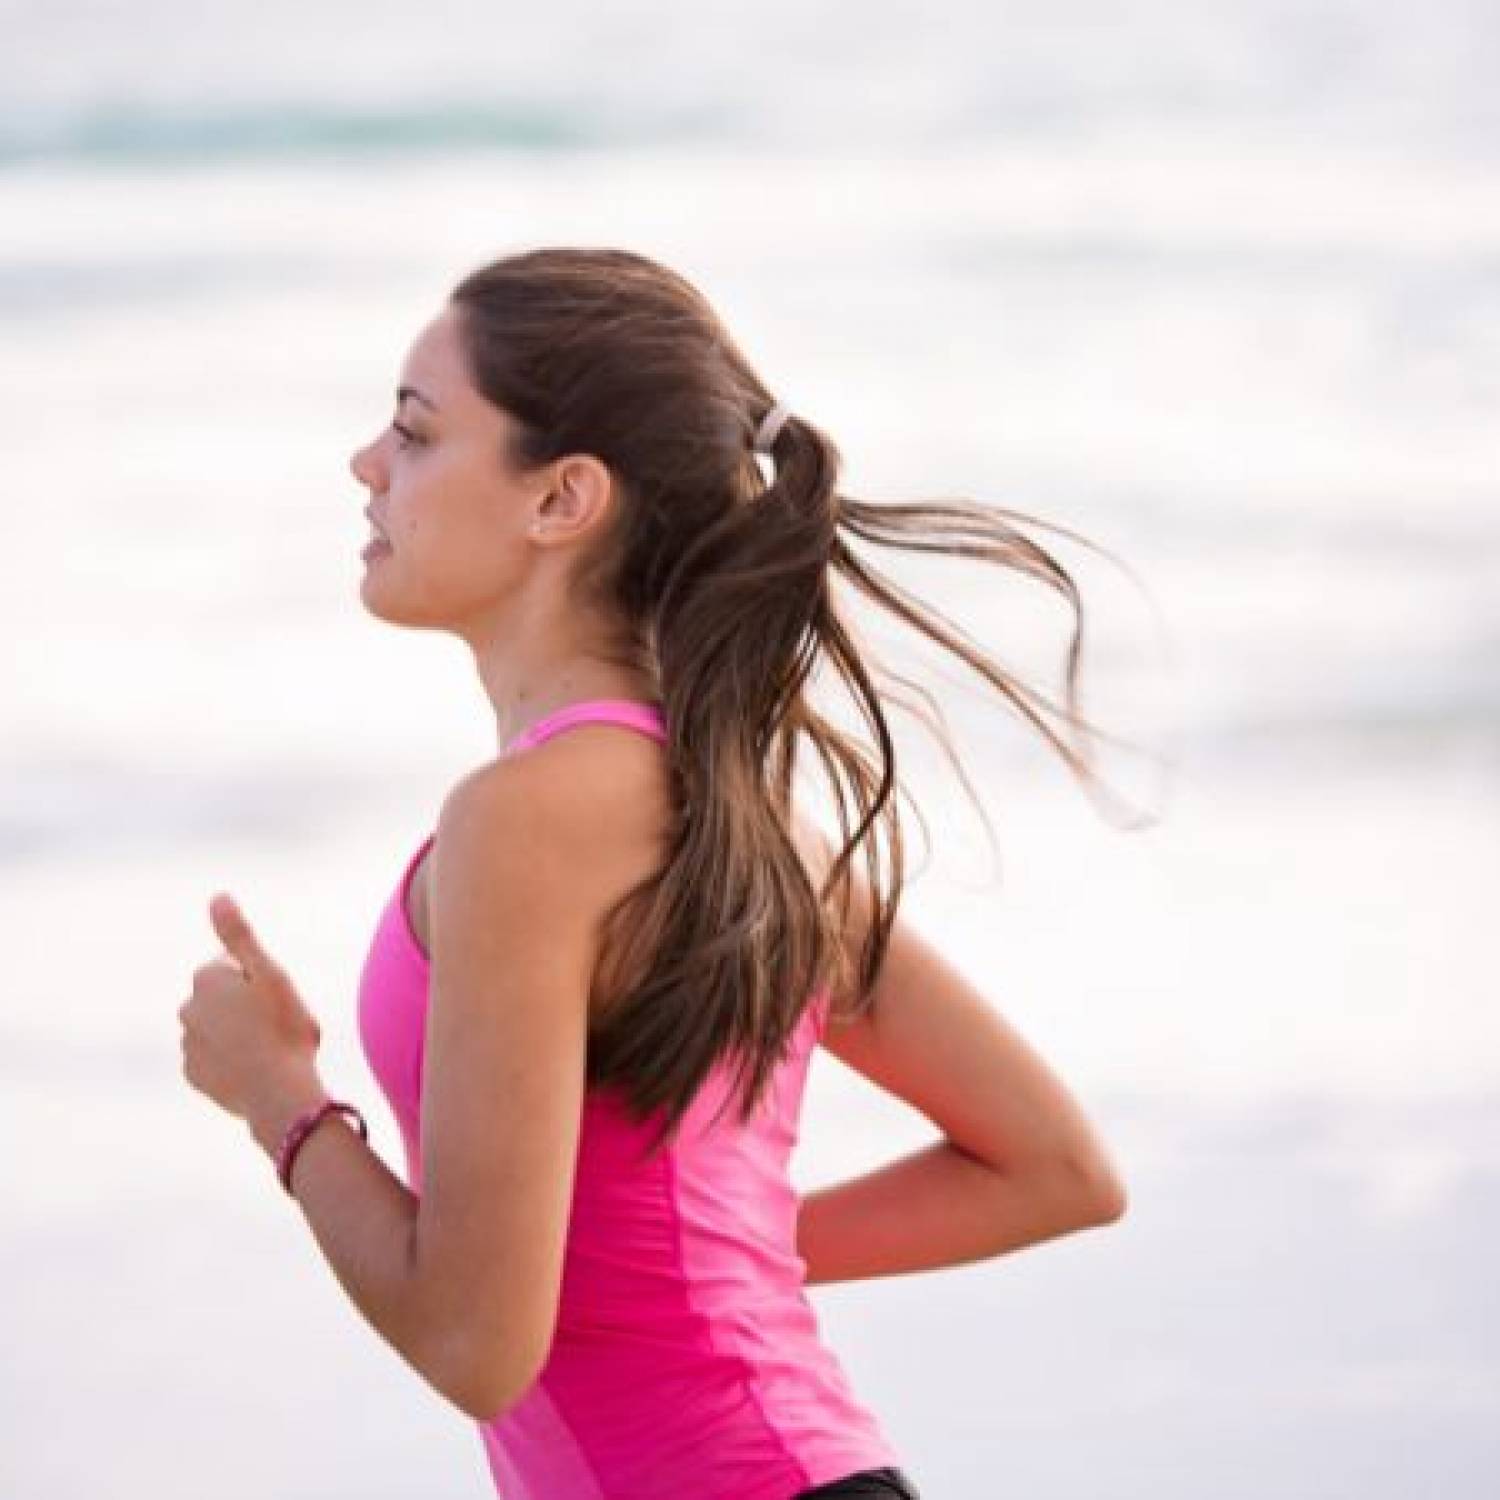 Bieganie dla utraty wagi: Dlaczego powinieneś zacząć biegać